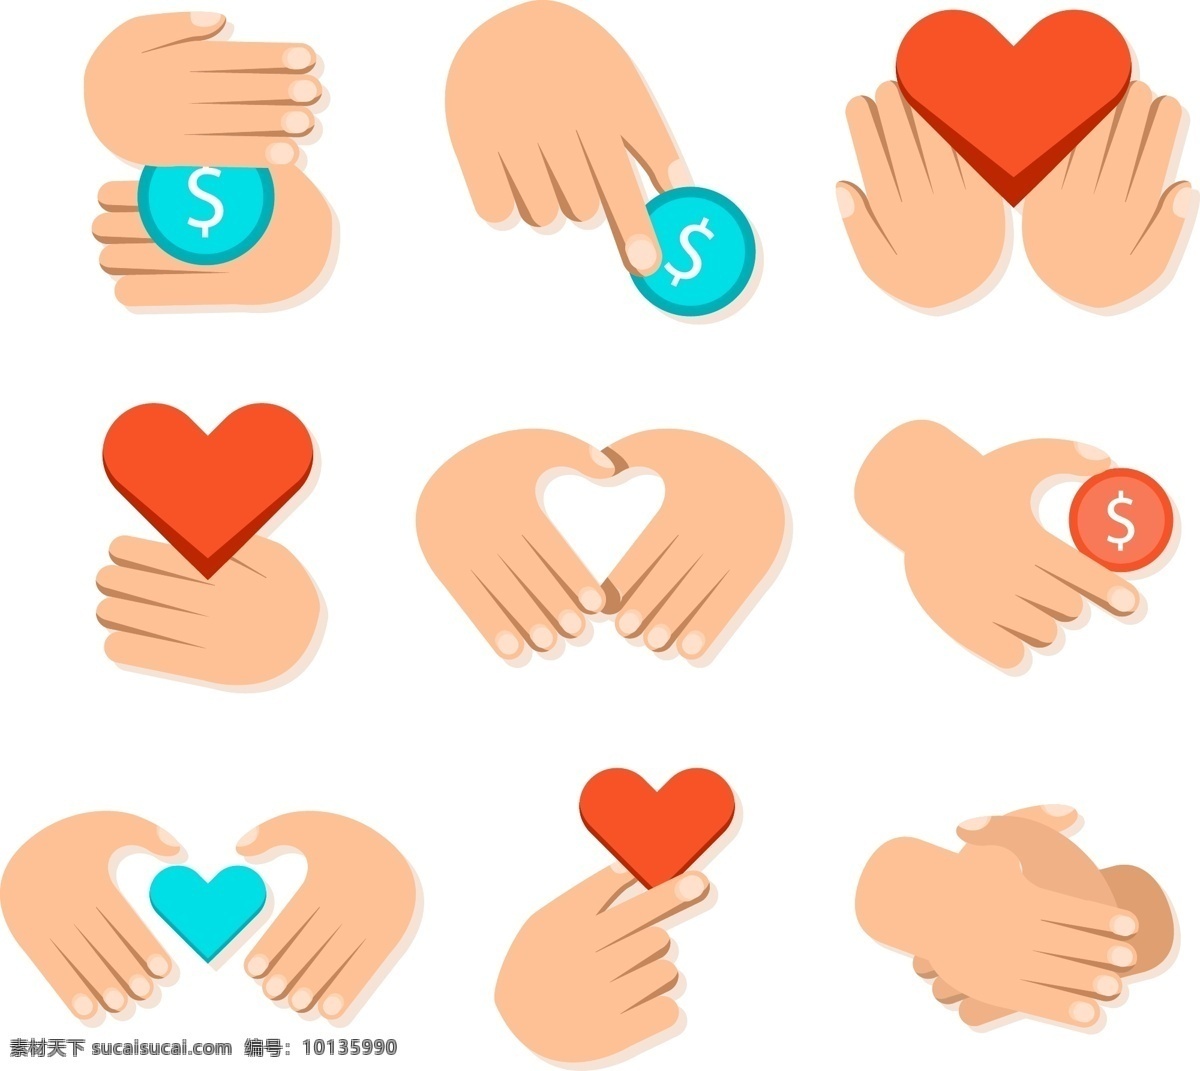 卡通 彩色 手 元素 国际 人类 团结 日 图标 简约 双手 心 钱币 爱心 慈善 帮助 捐赠 互助